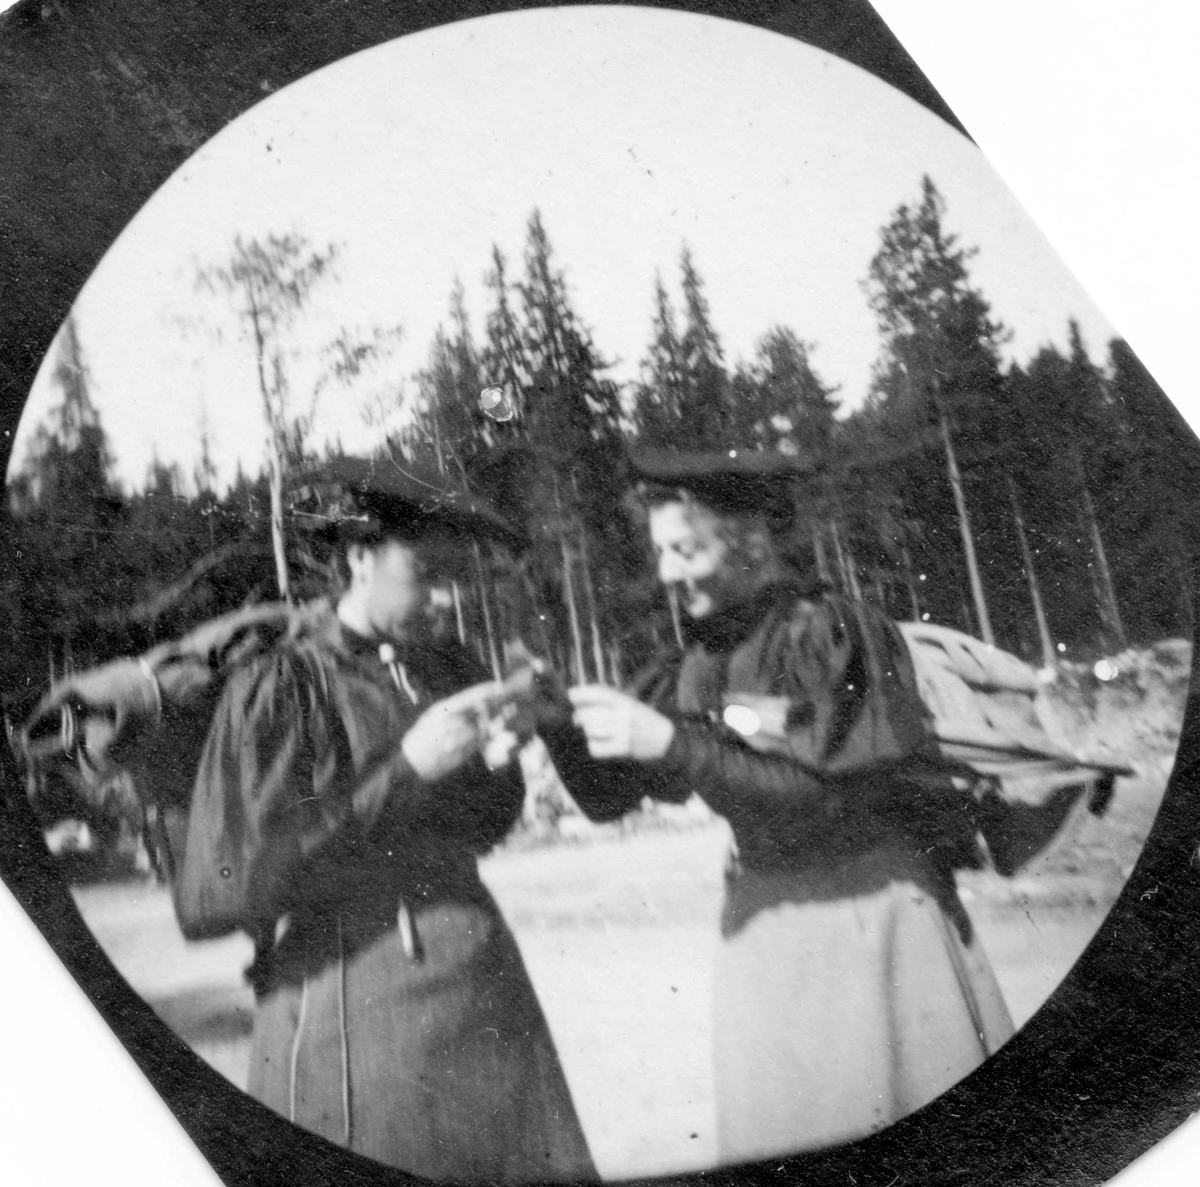 To damer med turutstyr, Tretten, Øyer, Oppland. Frk. Bjørnson og frk. Sørensen.